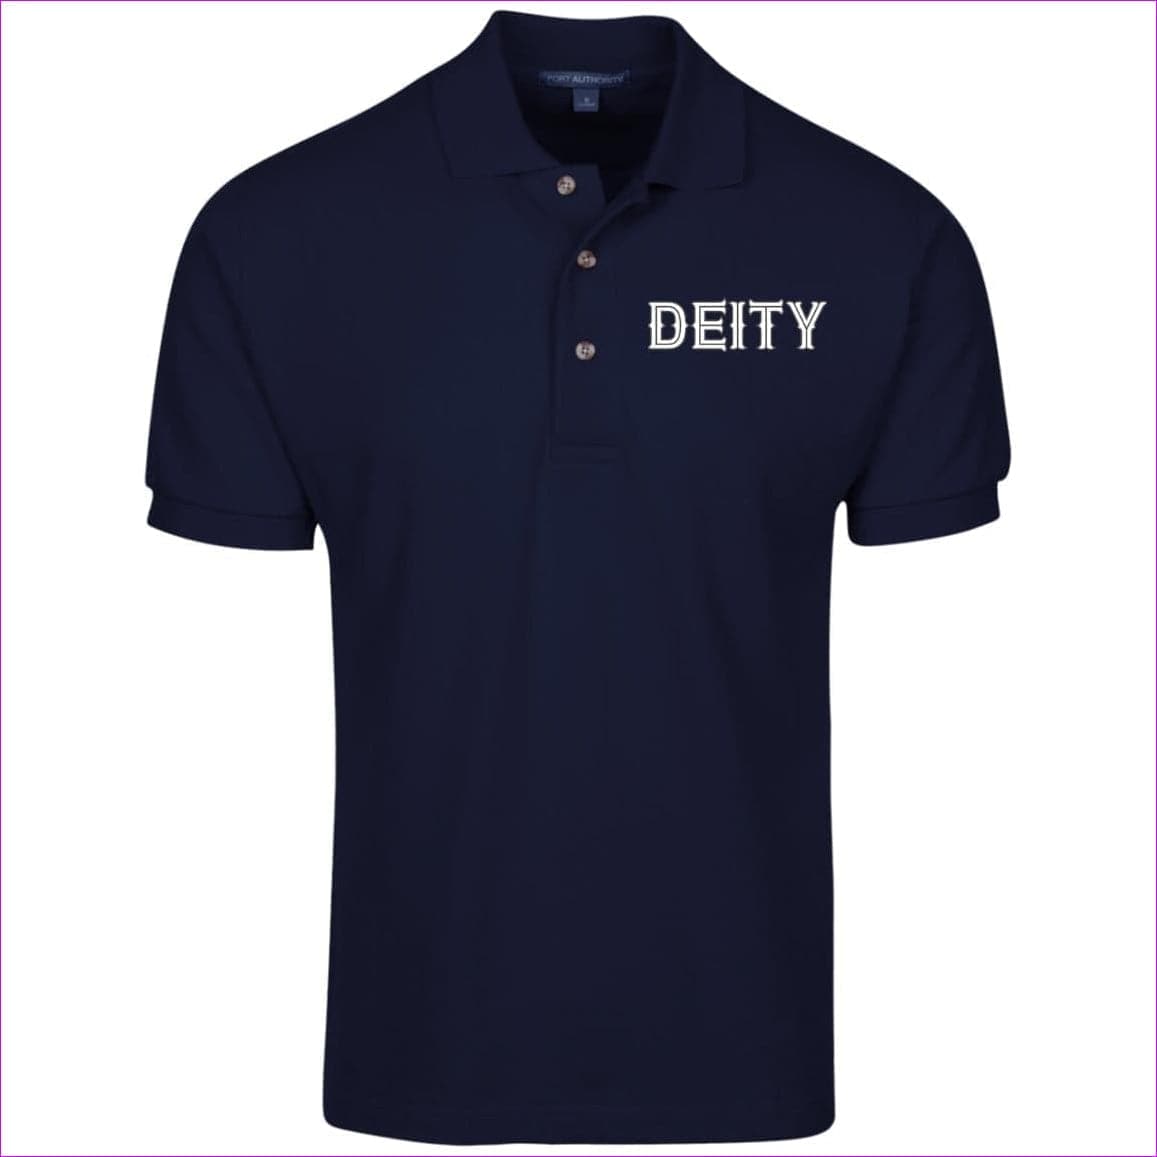 Navy Deity Cotton Pique Knit Polo - men's polo shirt at TFC&H Co.